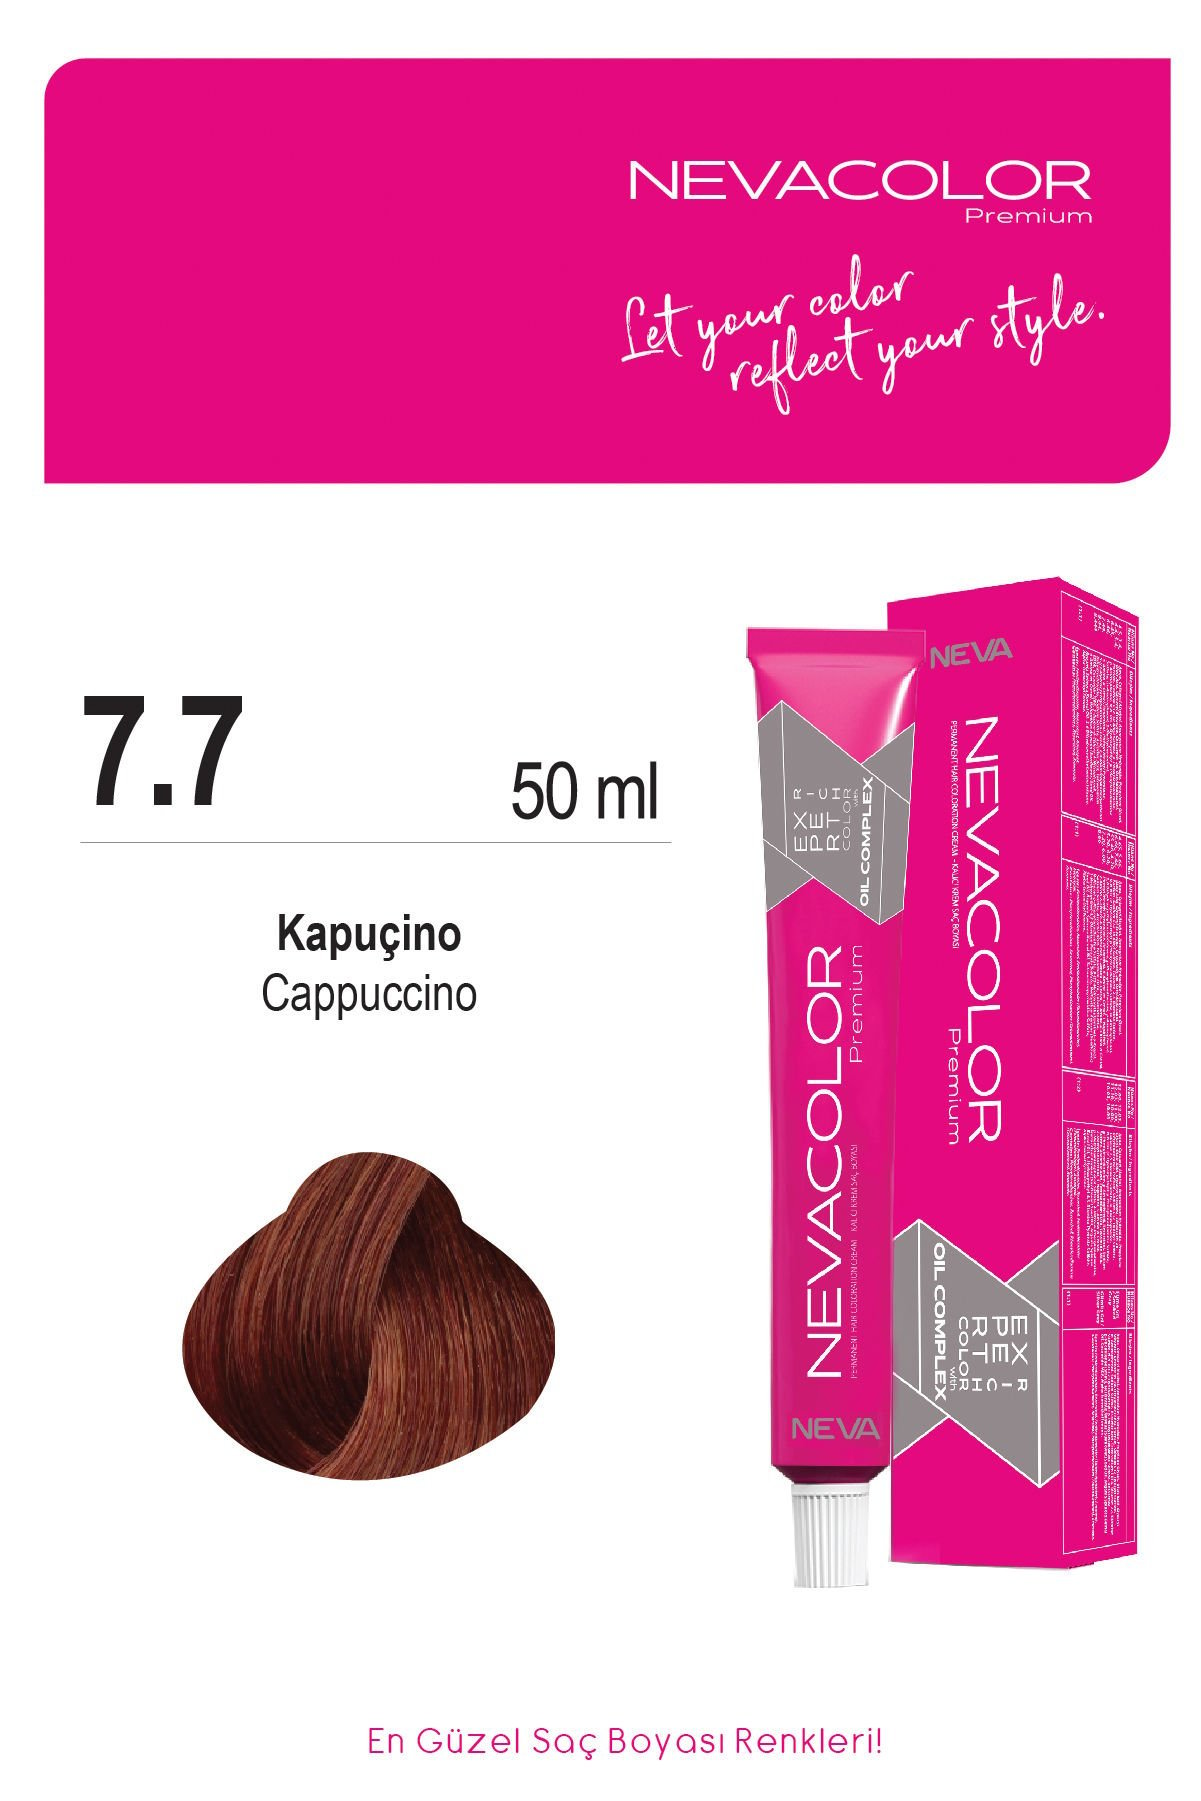 Nevacolor Premium 7.7 Kapuçino - Kalıcı Krem Saç Boyası 50 g Tüp